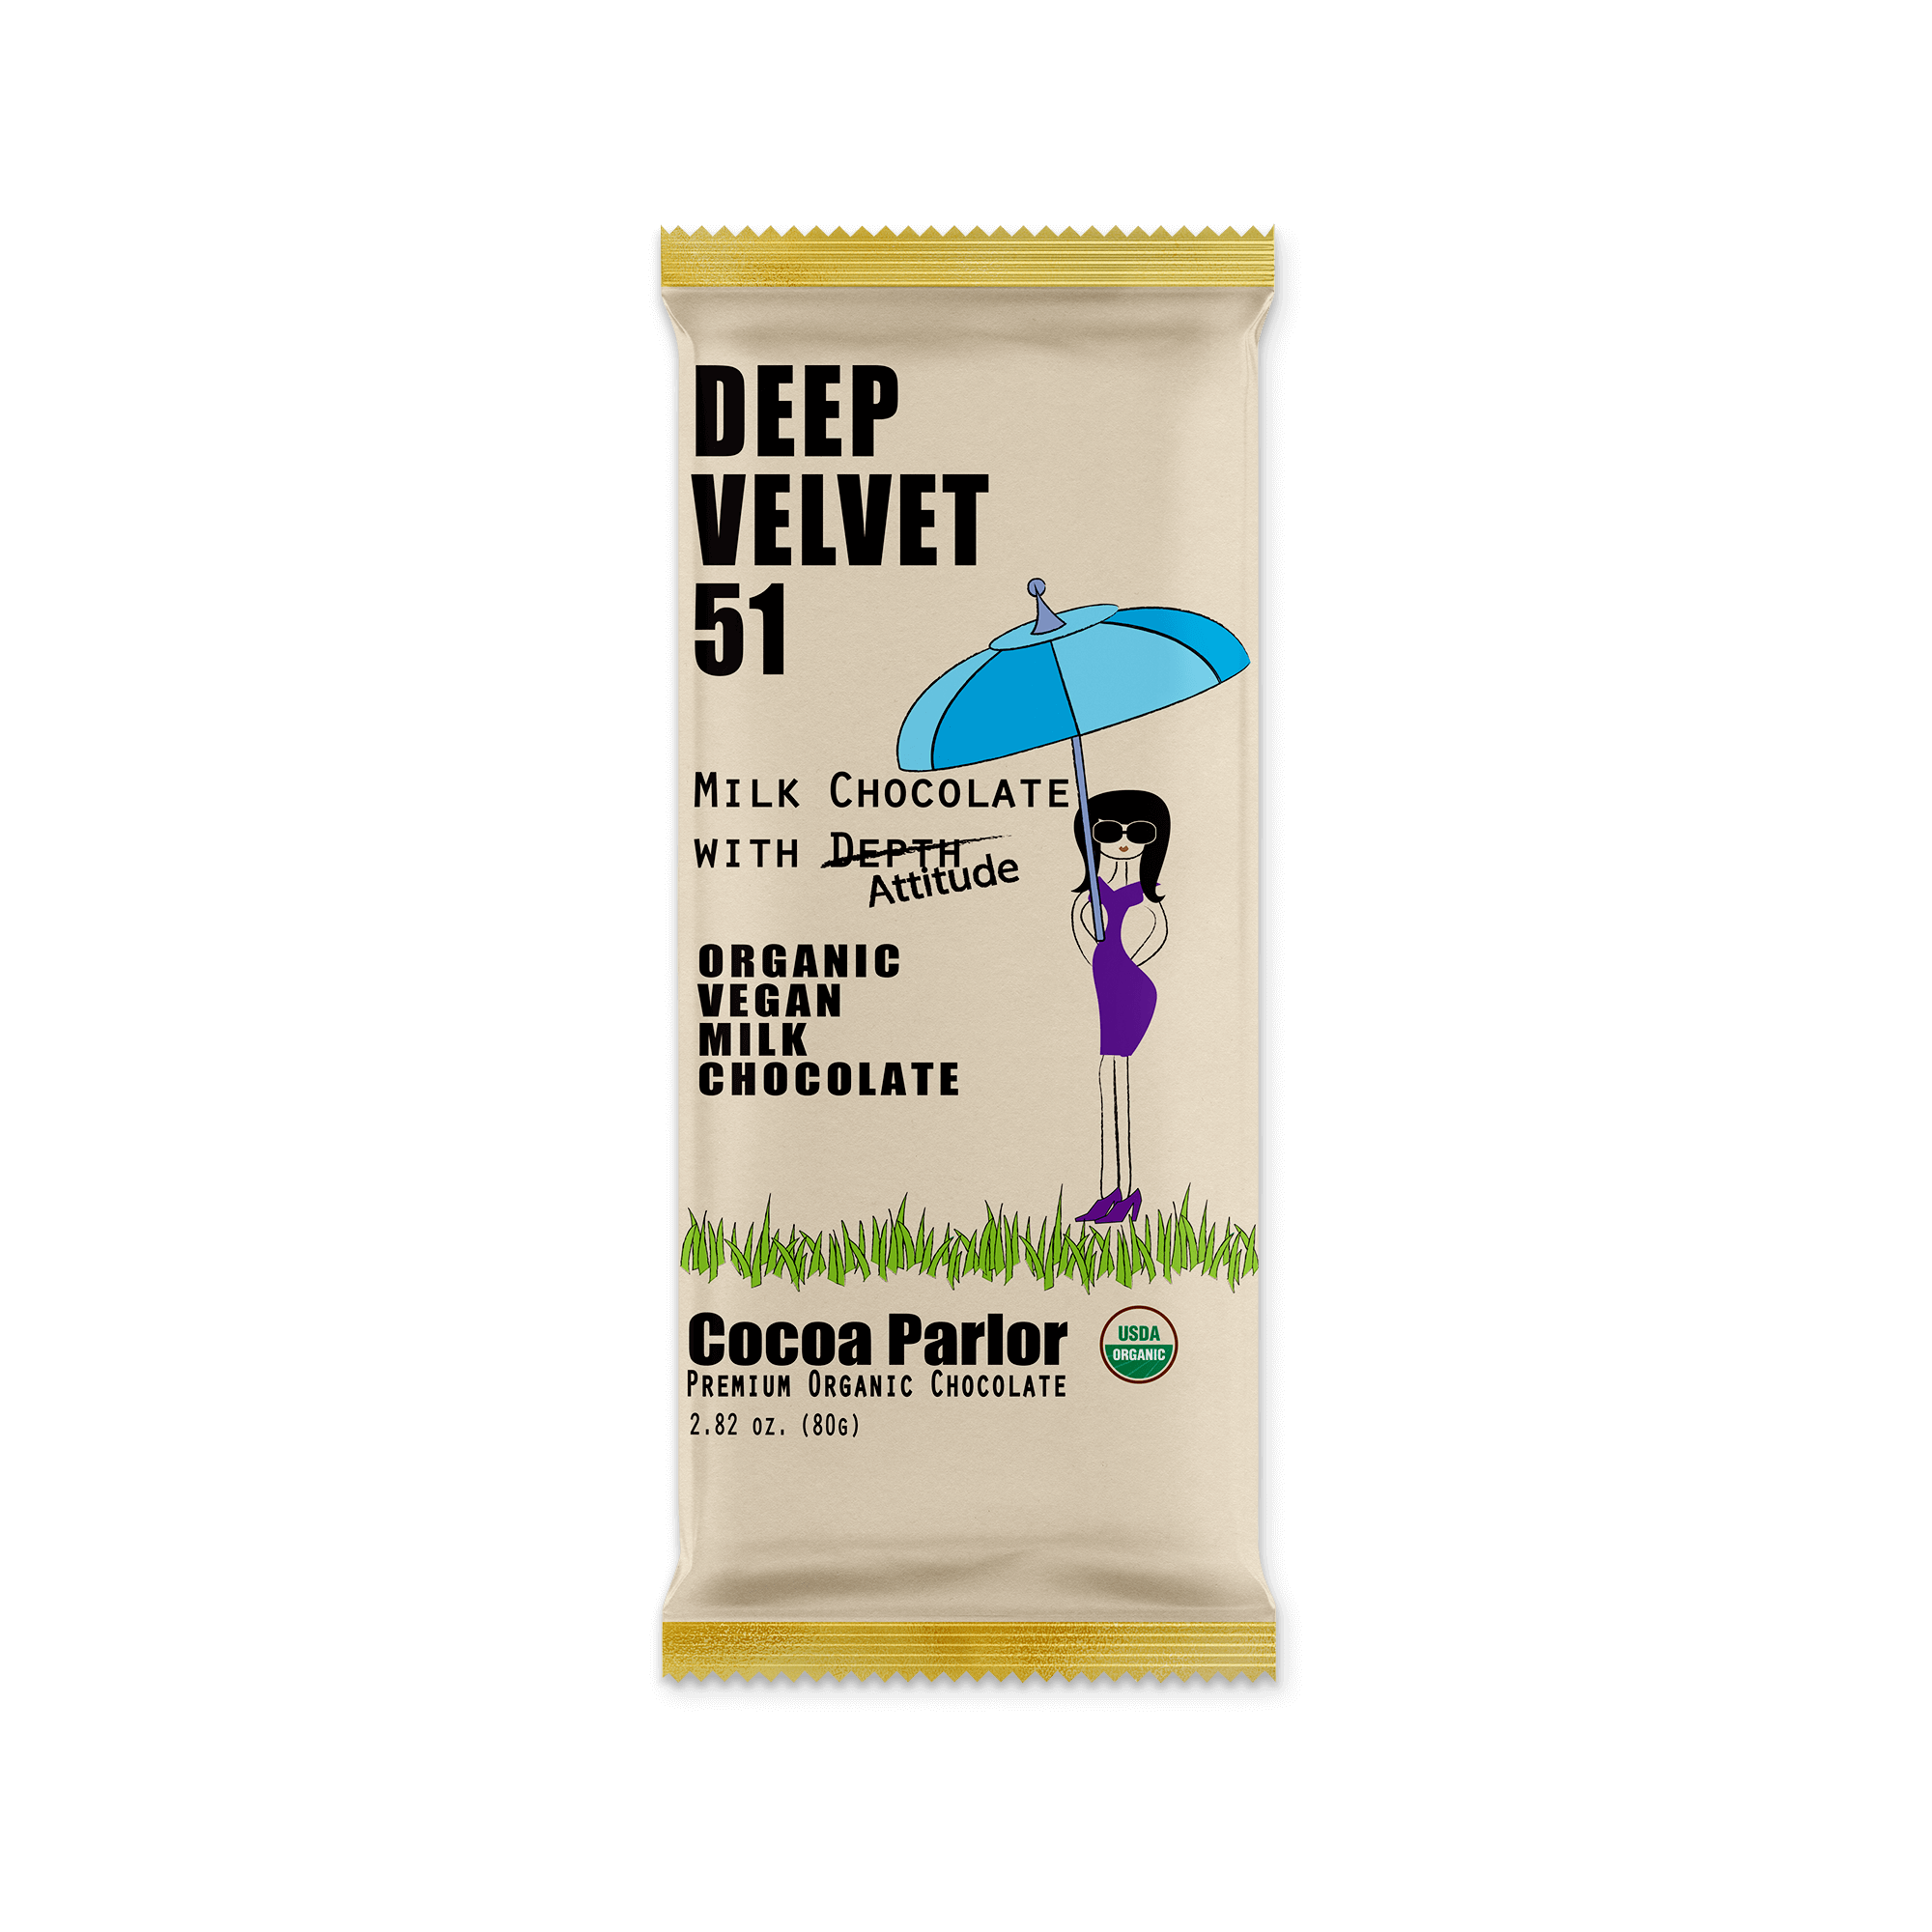 Cocoa Parlor Deep Velvet 51